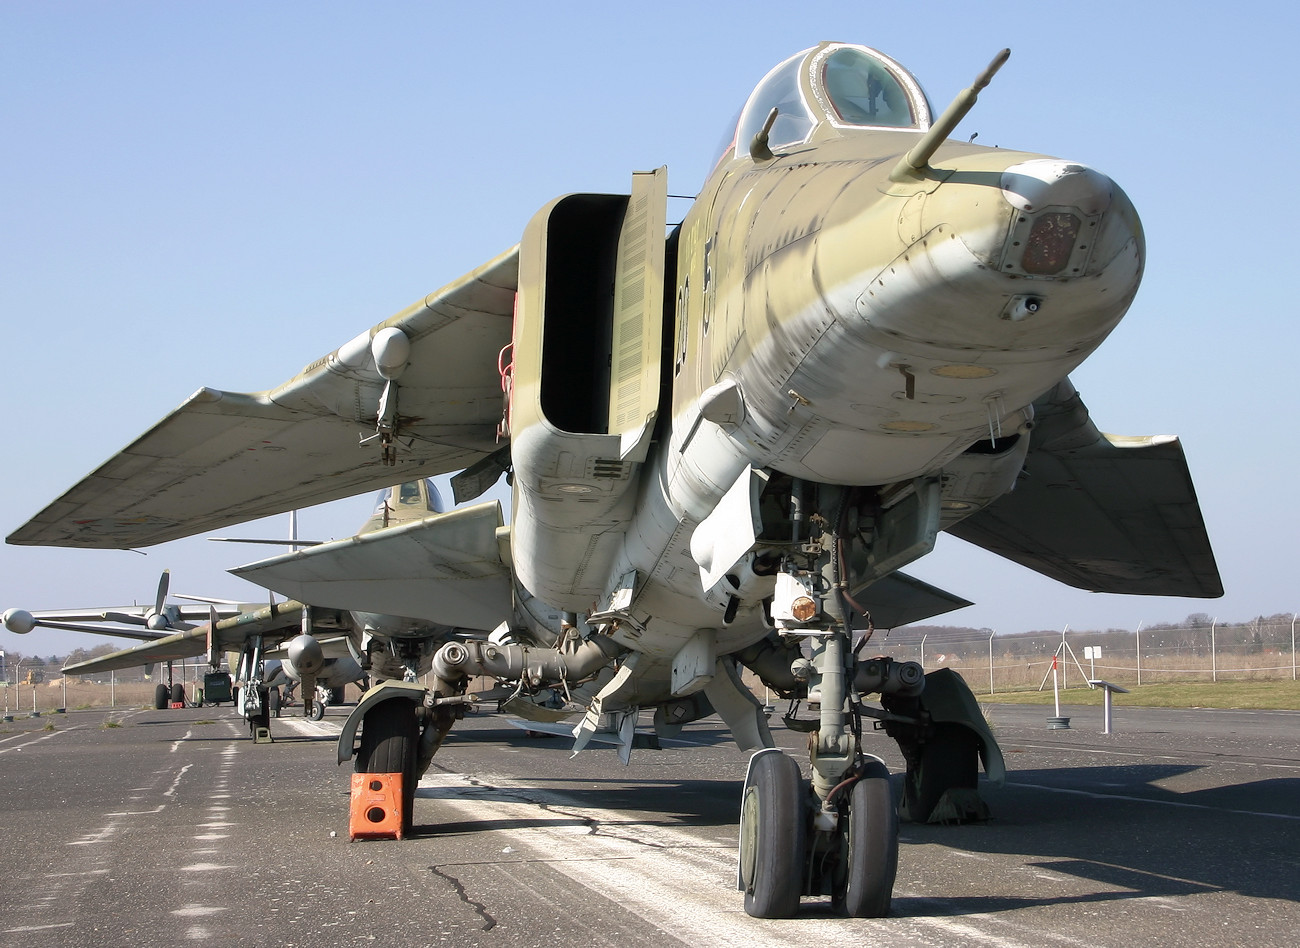 MiG-23 BN - Jagdbomber der UdSSR mit Schwenkflügel von 1974 der 3. Generation